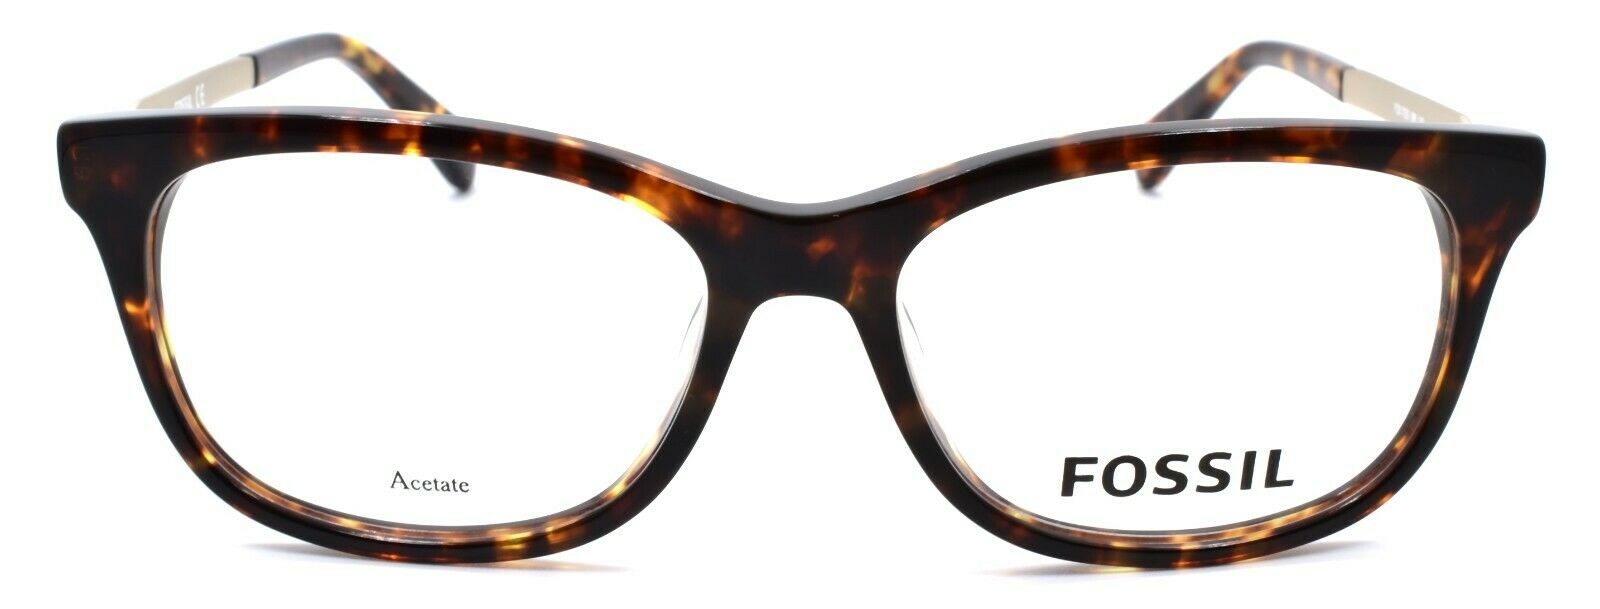 2-Fossil FOS 7025 086 Women's Eyeglasses Frames 50-15-140 Dark Havana-716736029221-IKSpecs